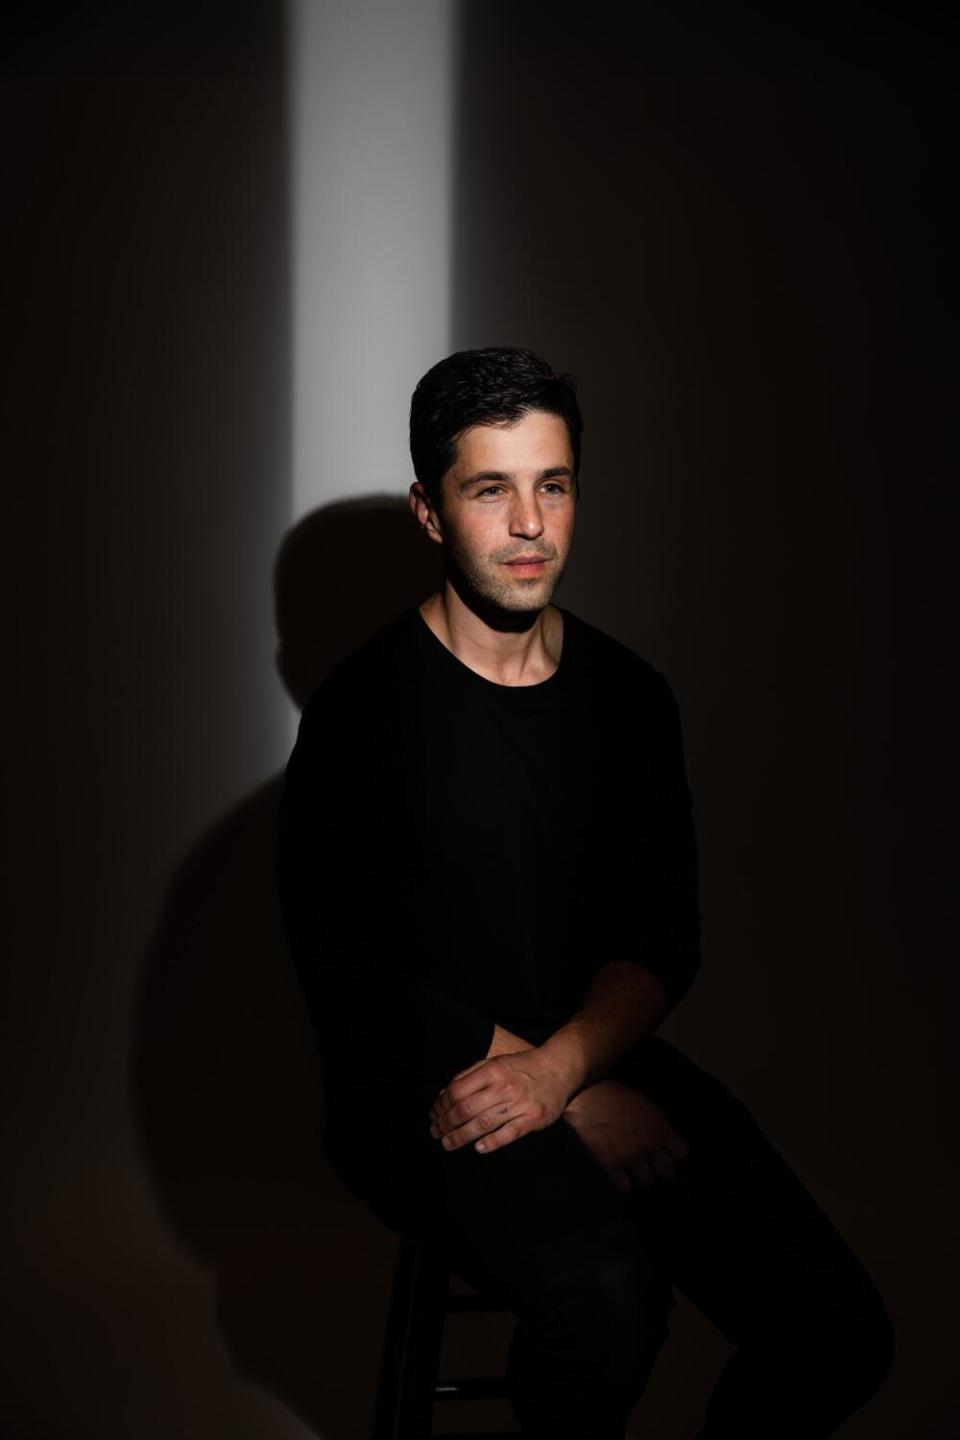 Josh Peck, in a black sweater, sits in a dark room.